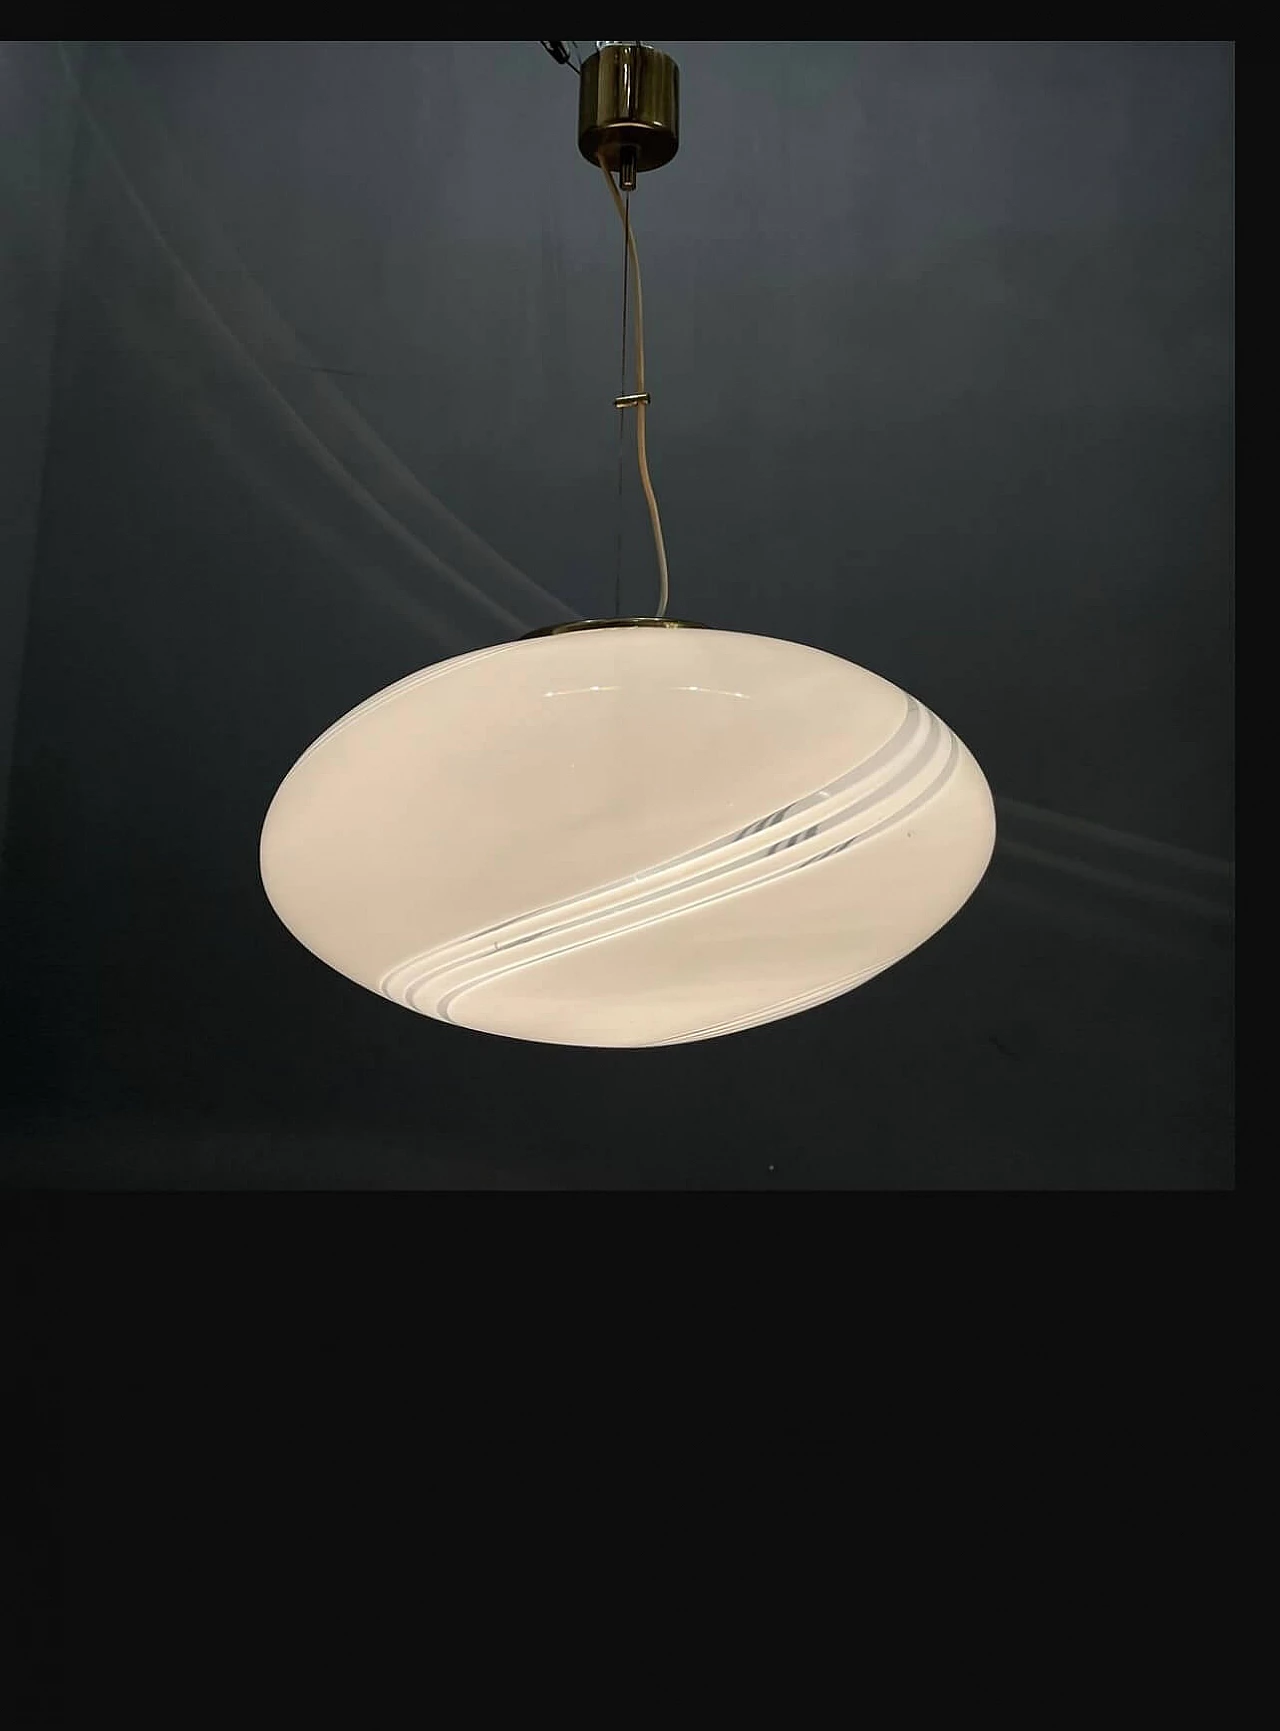 Suspension lamp in Murano glass by Venini, 1950s 1192576